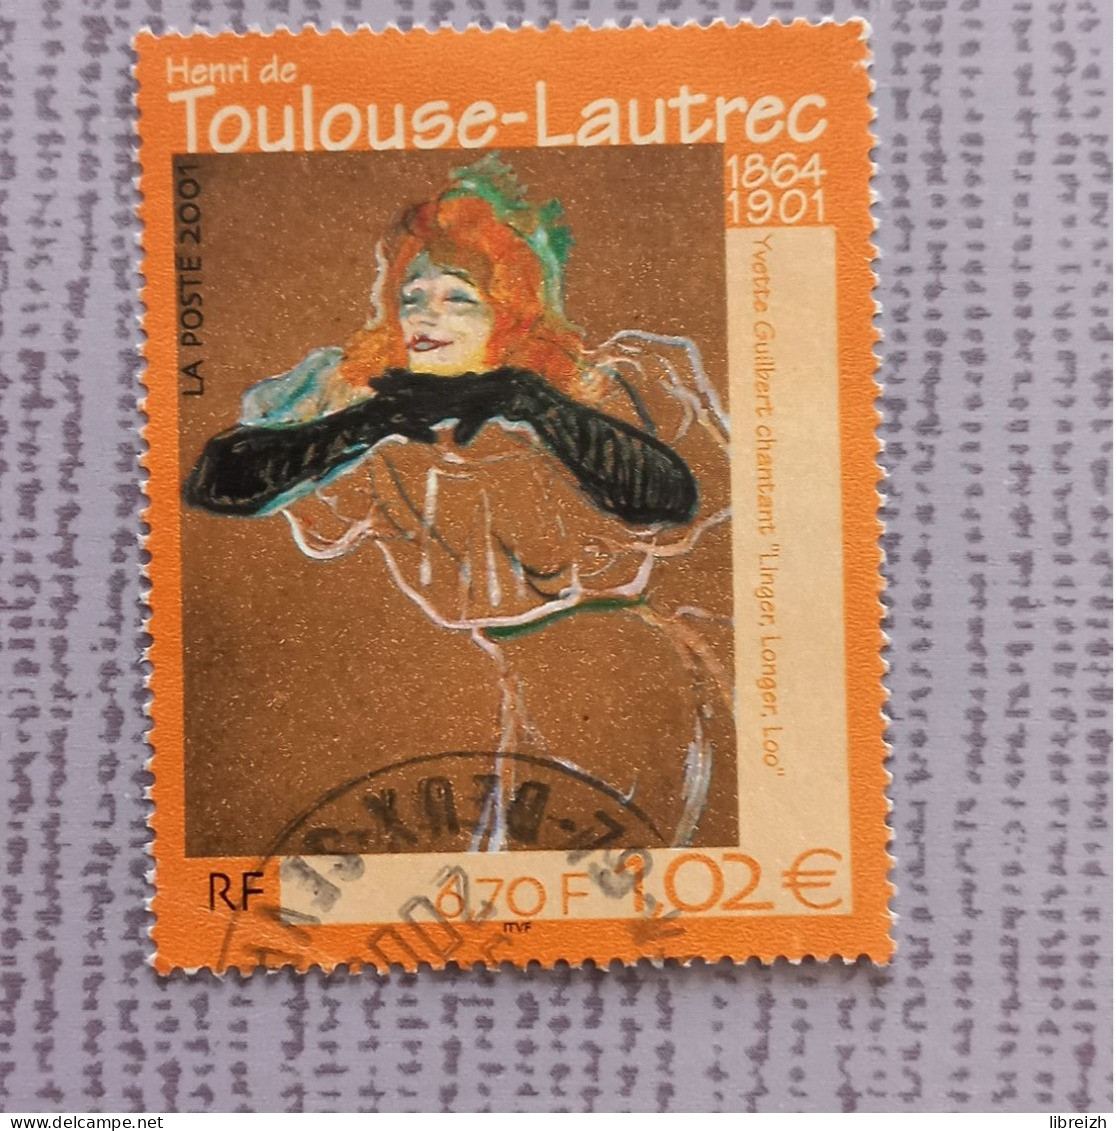 Henri De Toulouse-Lautrec N° 3421  Année 2001 - Usati